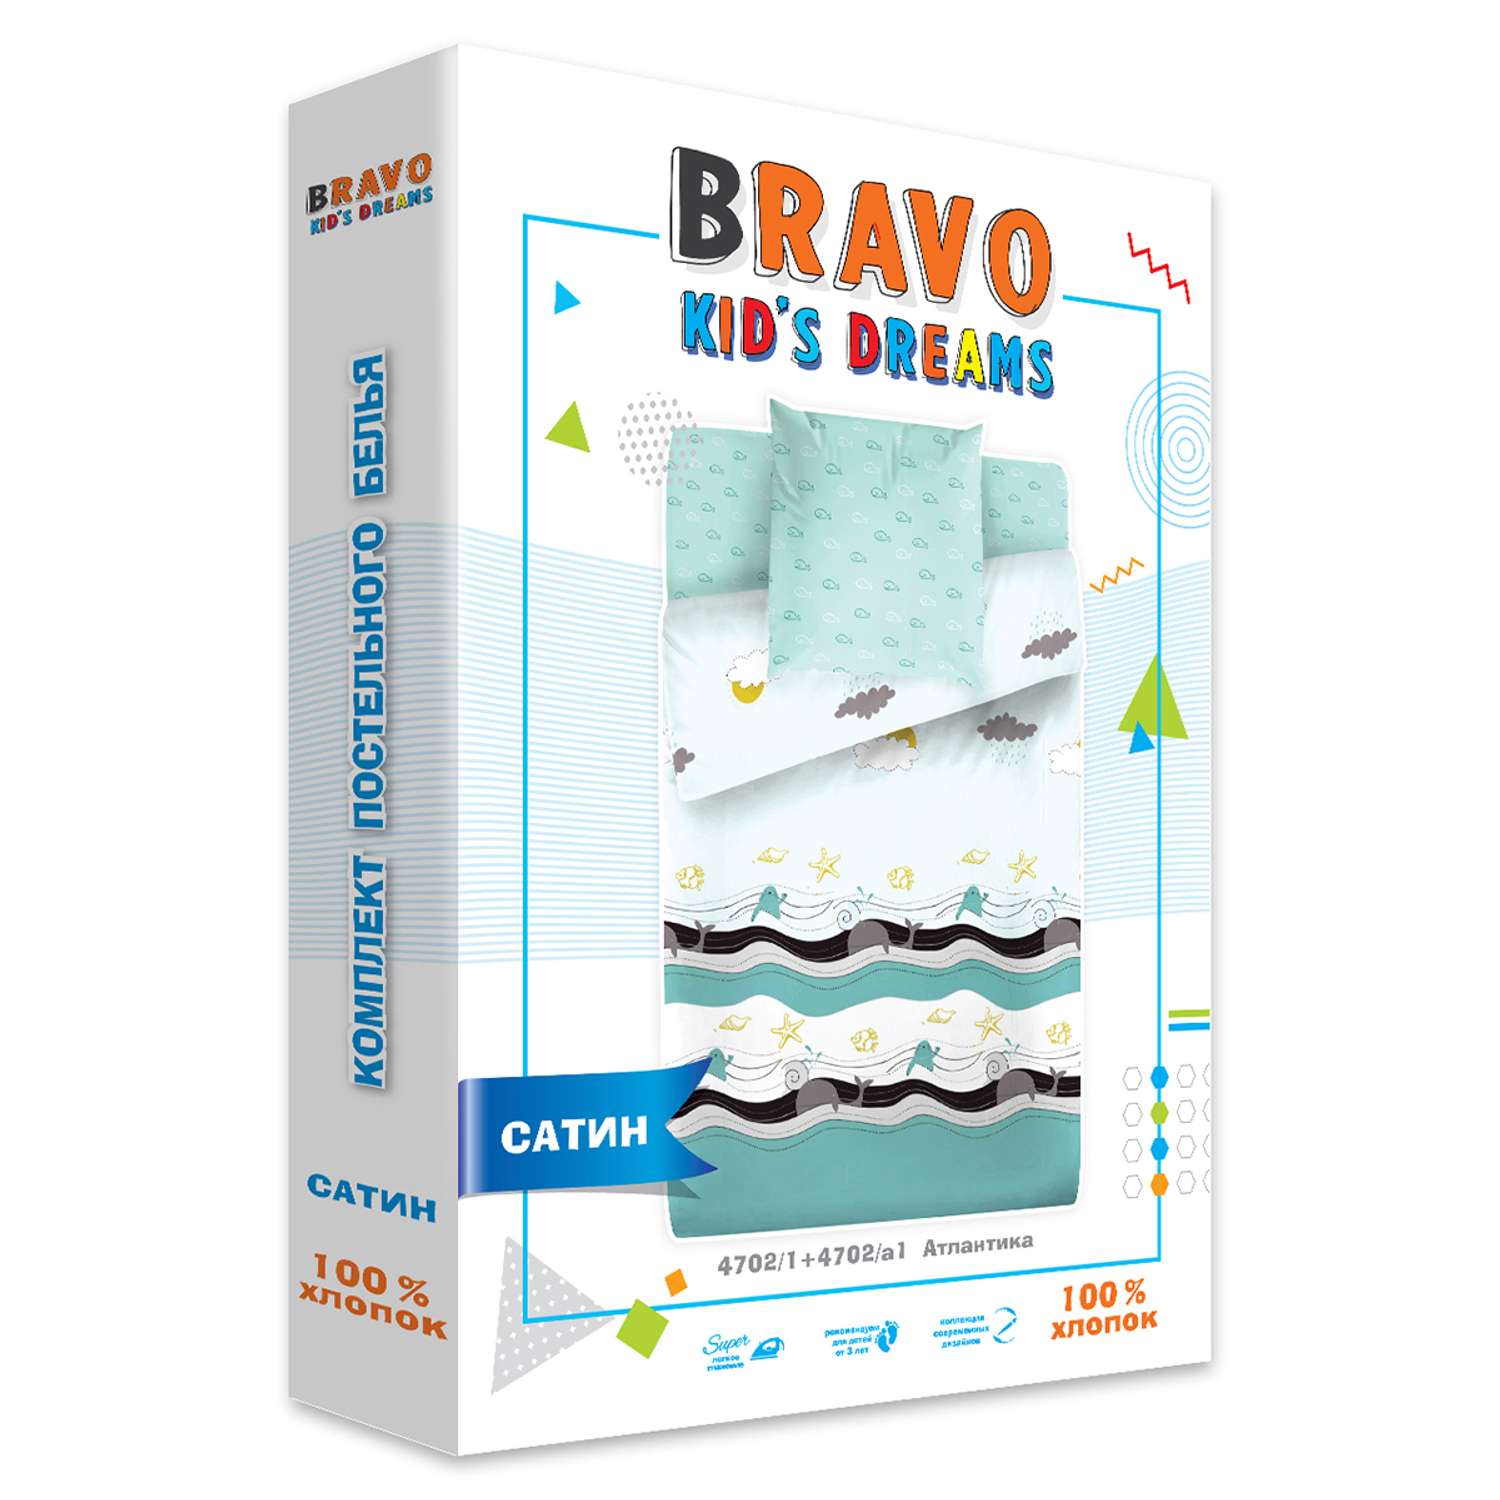 Комплект постельного белья BRAVO kids dreams Атлантика 1.5 спальный 3 предмета Сатин - фото 4